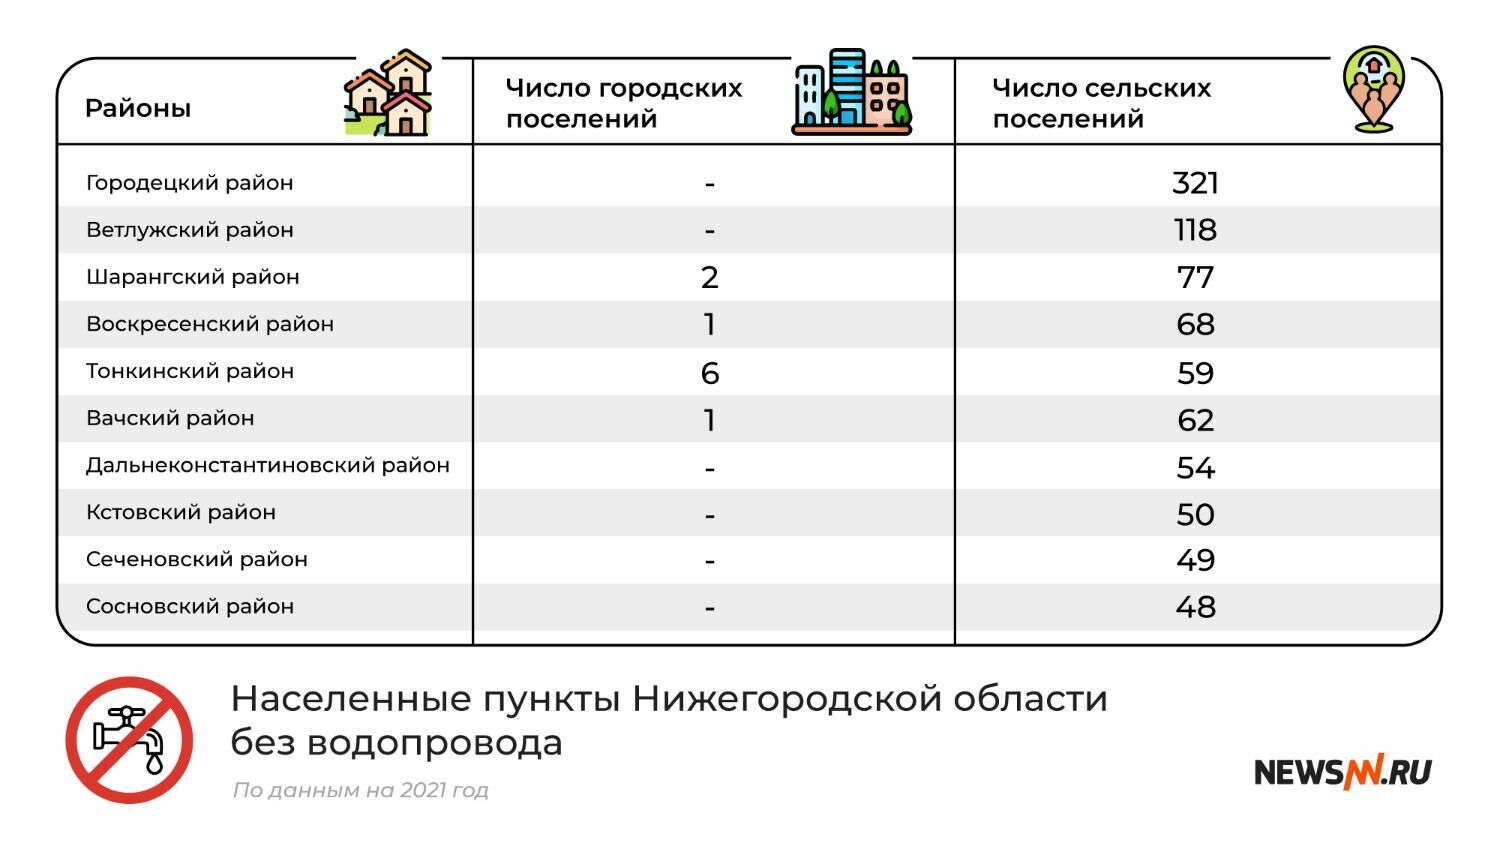 Районы Нижегородской области без водопровода